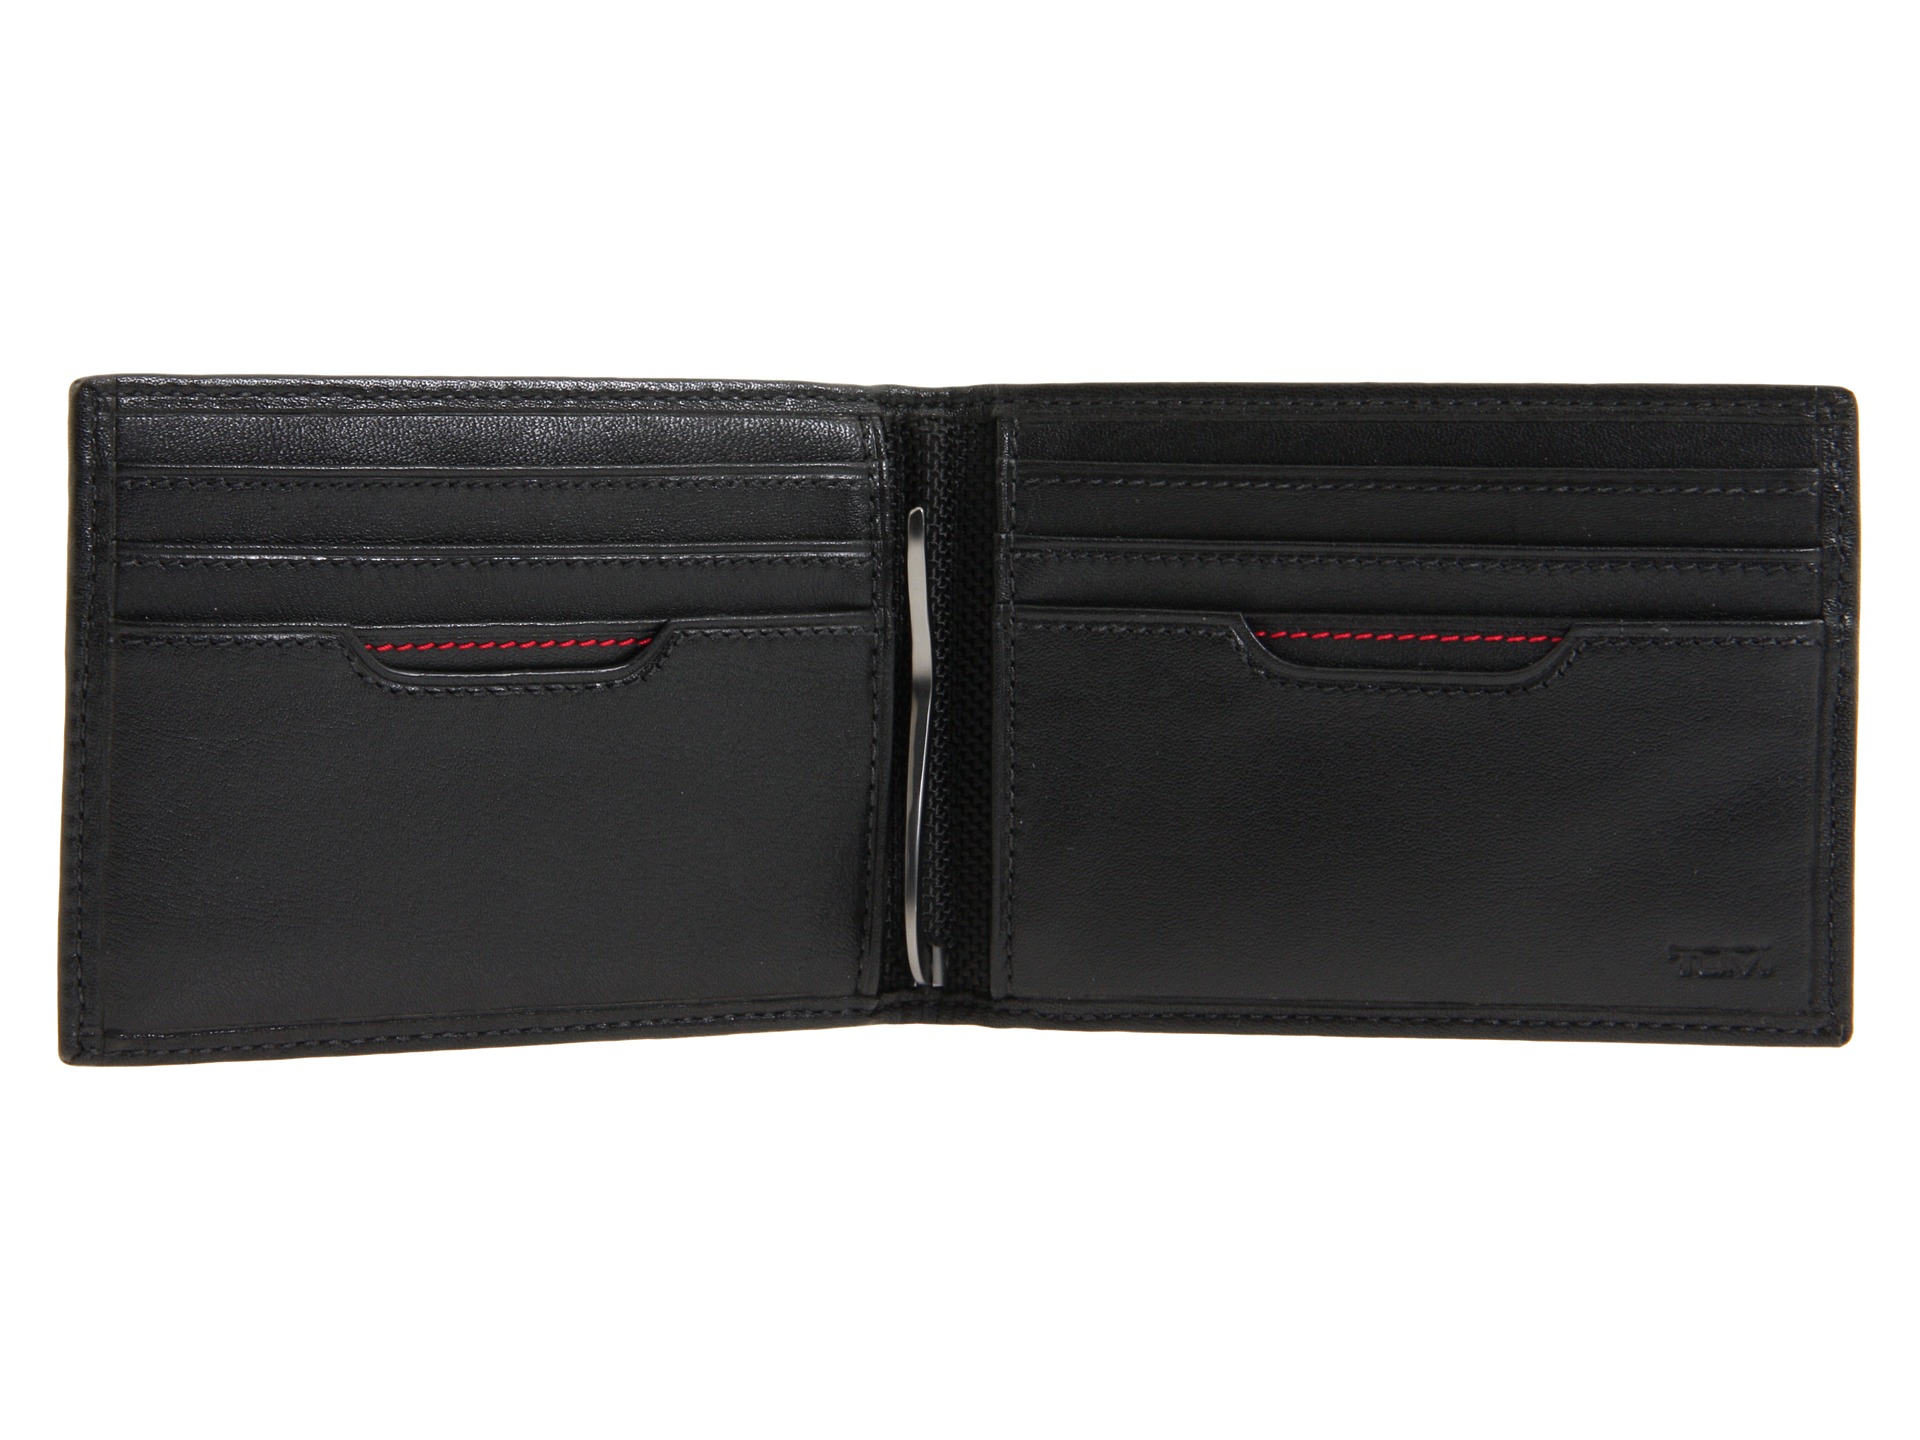 Tumi Delta Money Clip Wallet Black | Shipped Free at Zappos